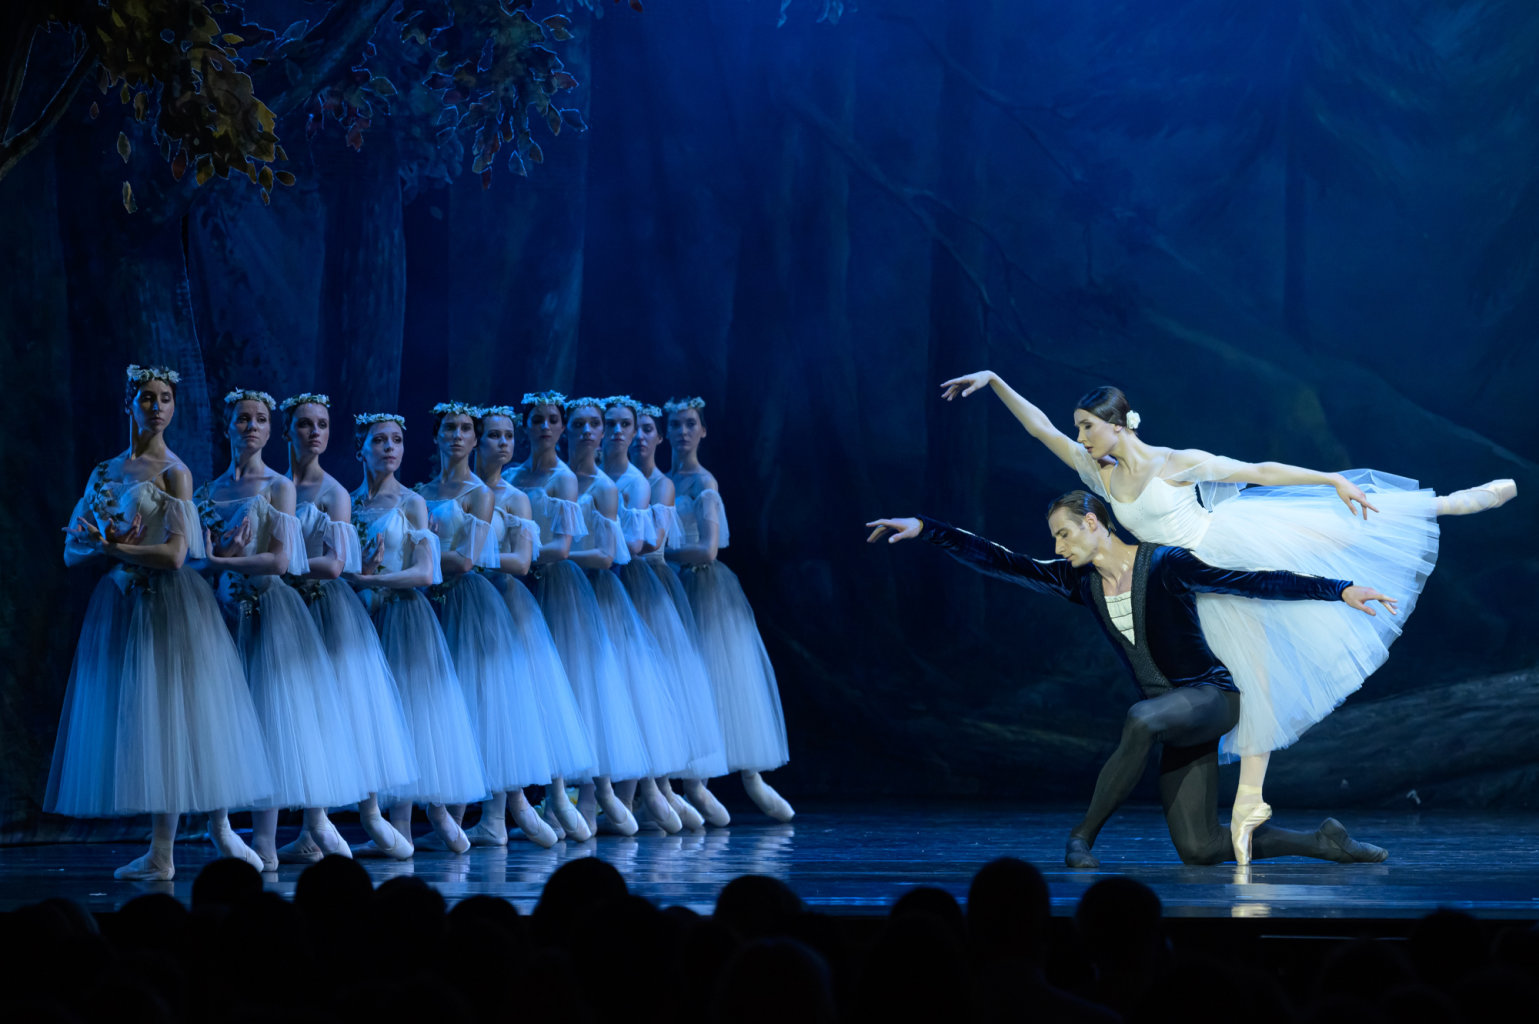 Vilisų šokis po žvaigždėtu Vilniaus dangumi:  „LNOBT Open“ scenoje – baletas „Žizel“ 